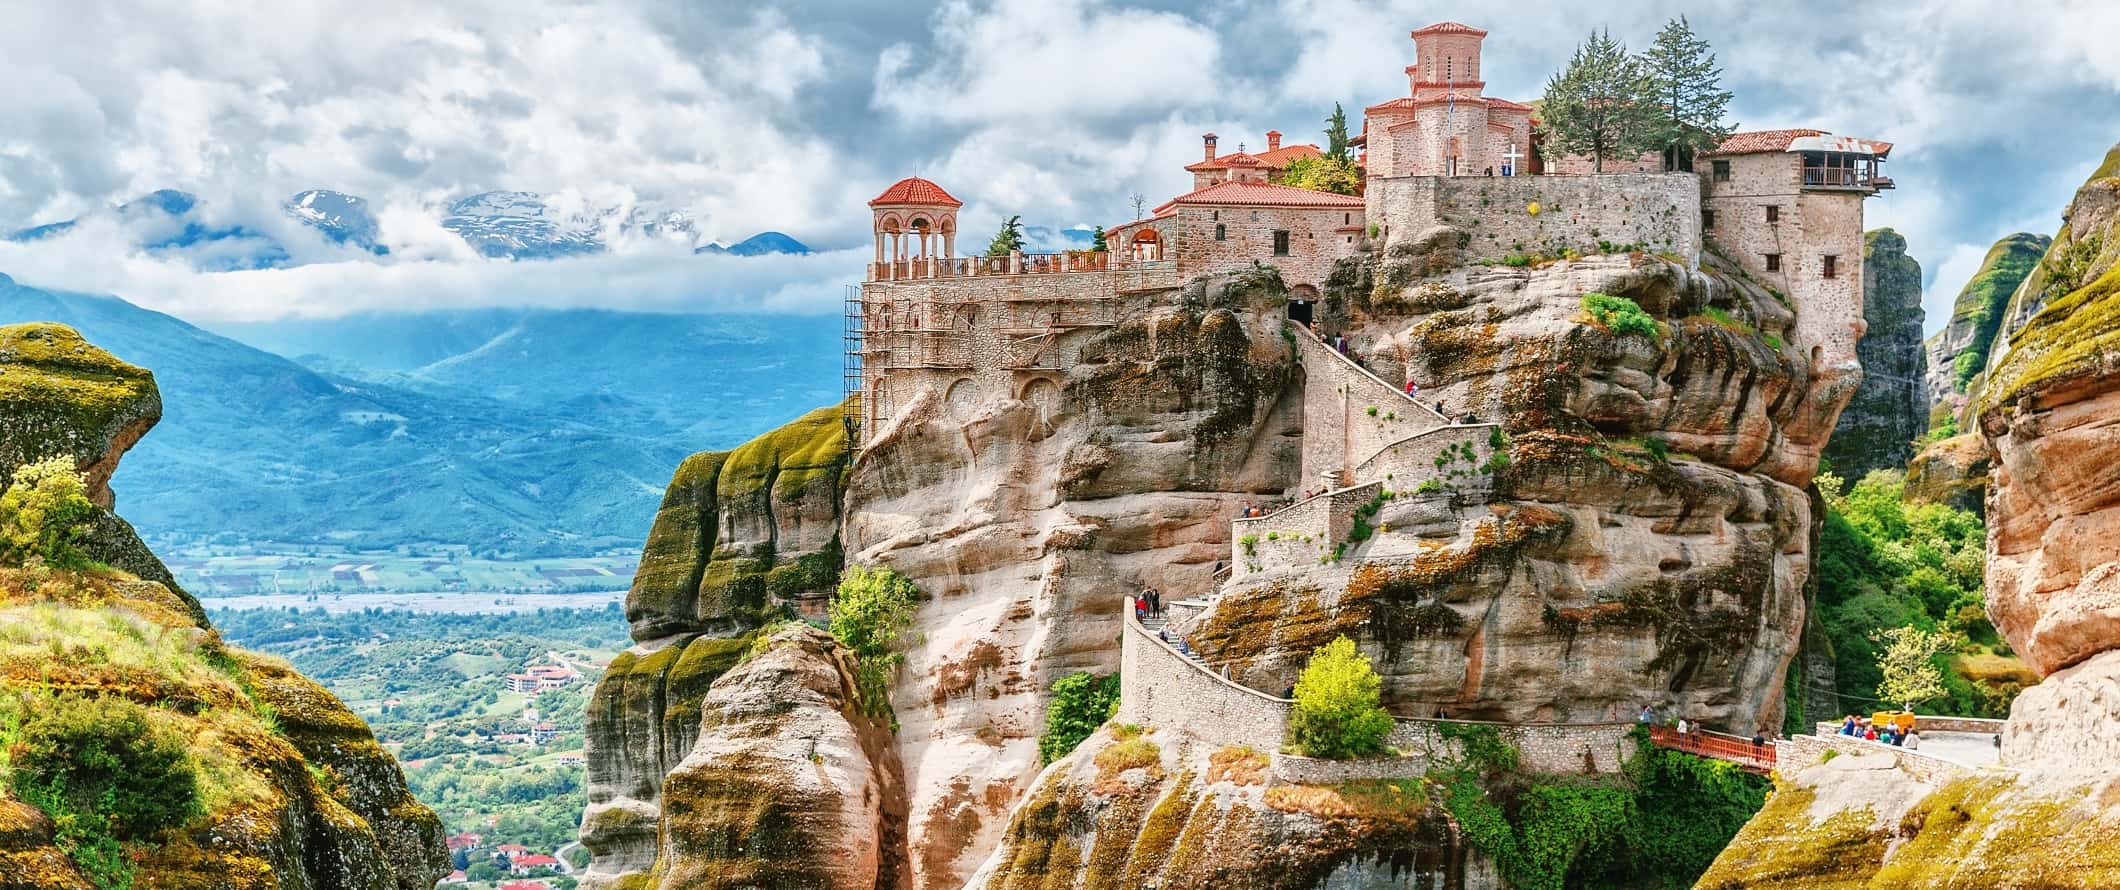 Vista dos mosteiros em rochas em Meteroa, Grécia